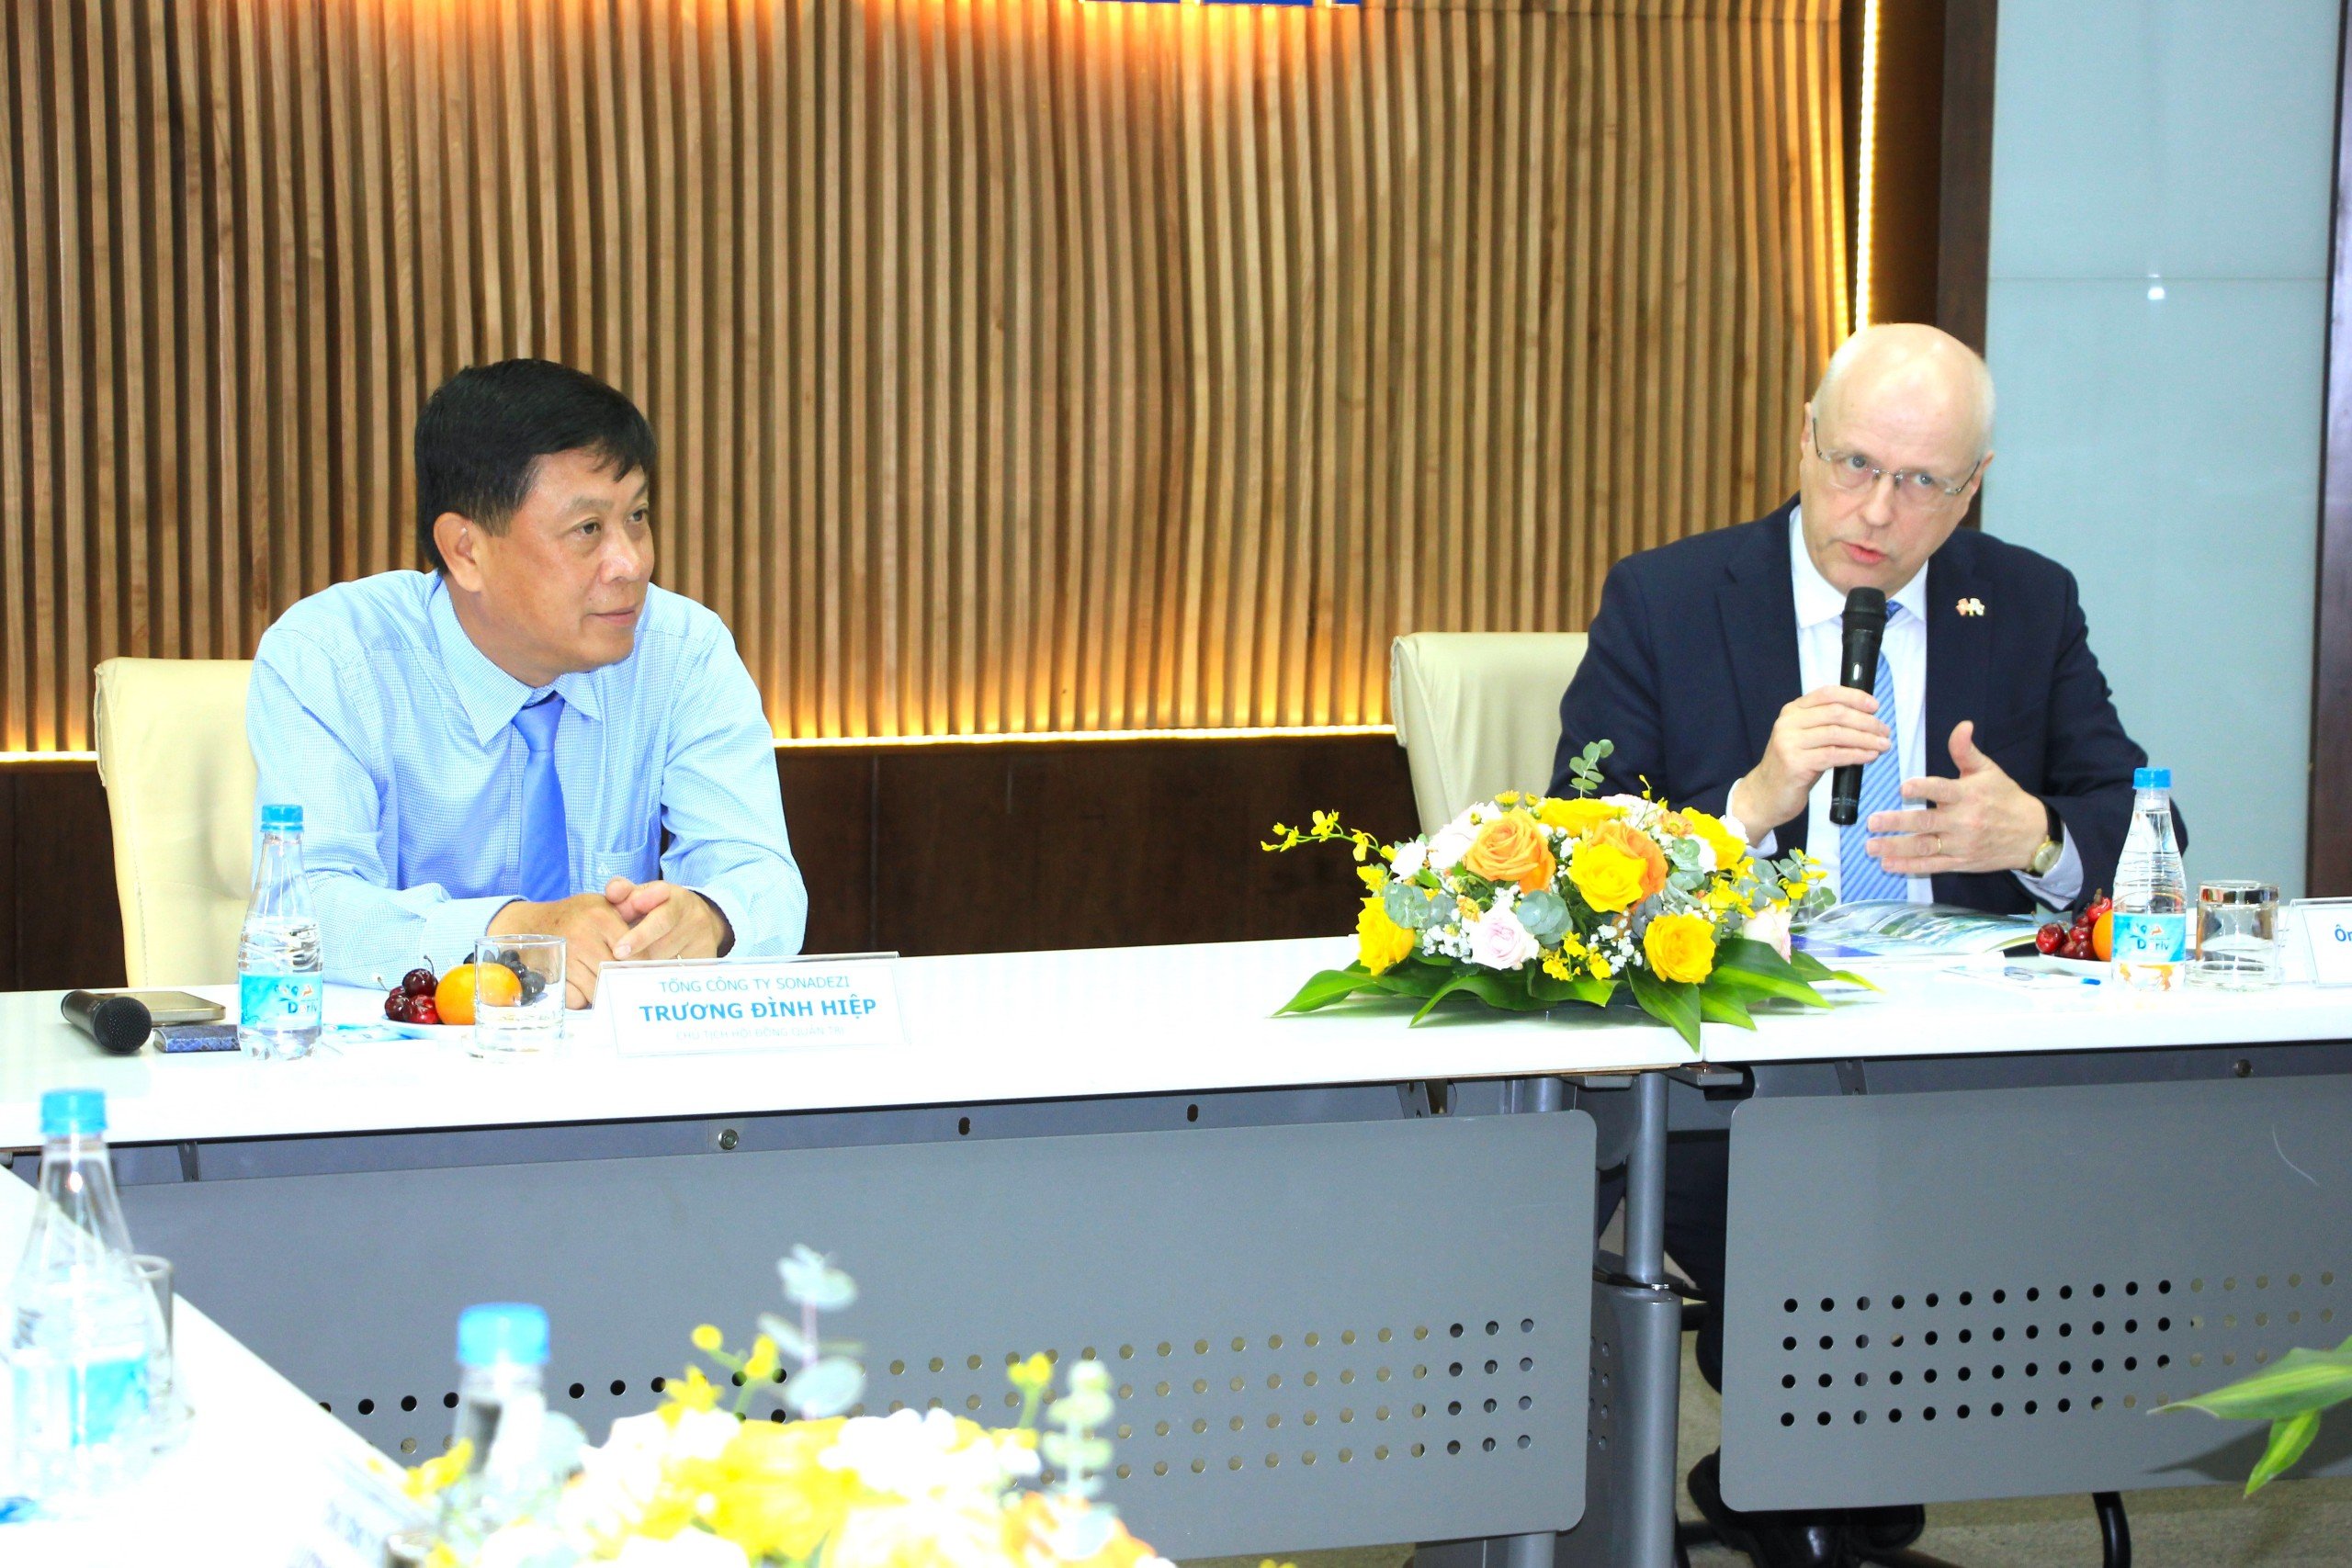 Đại sứ Keijo Norvanto trao đổi với Tổng công ty Sonadezi